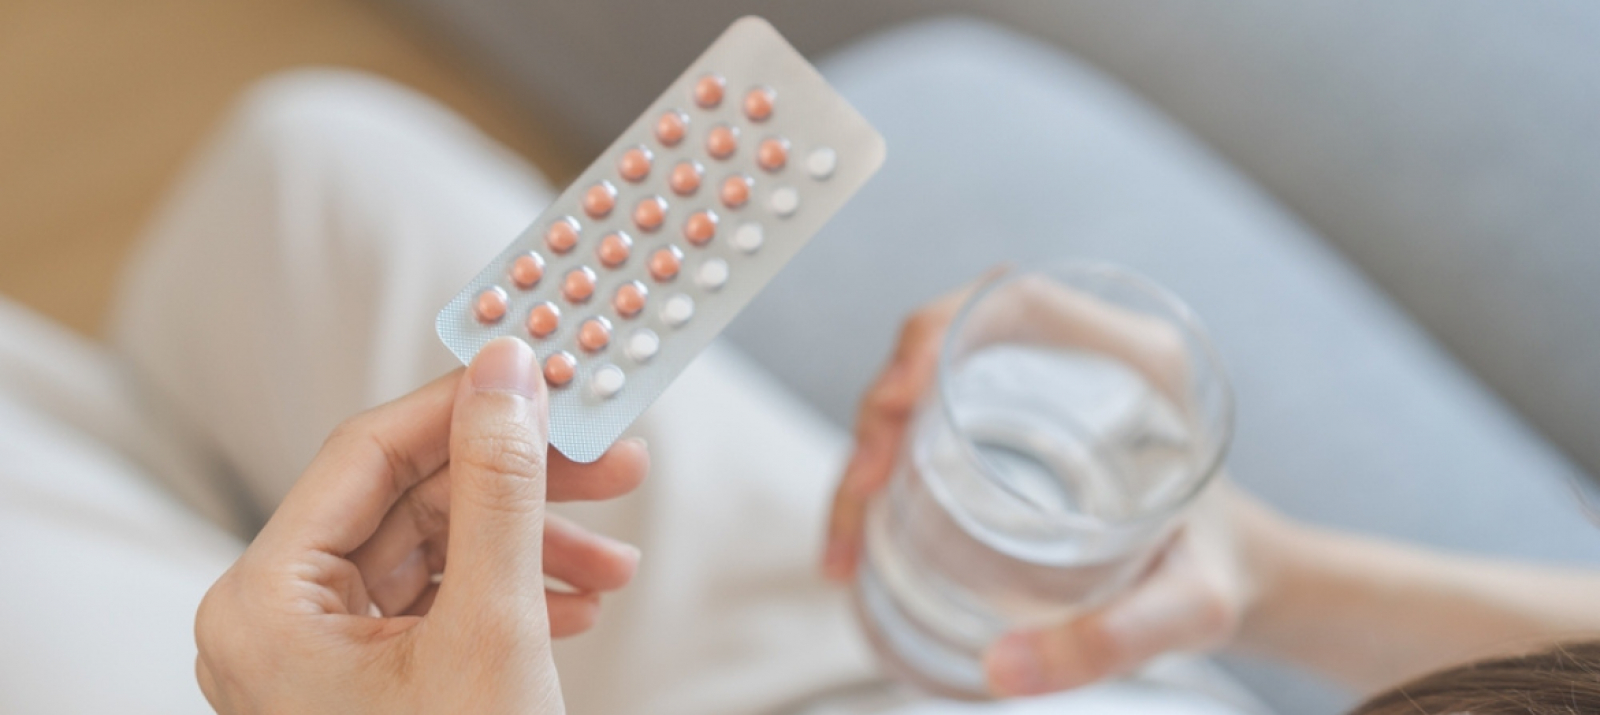 FEBRASGO se manifesta sobre a prescrição de contraceptivos hormonais por farmacêuticos no Brasil.